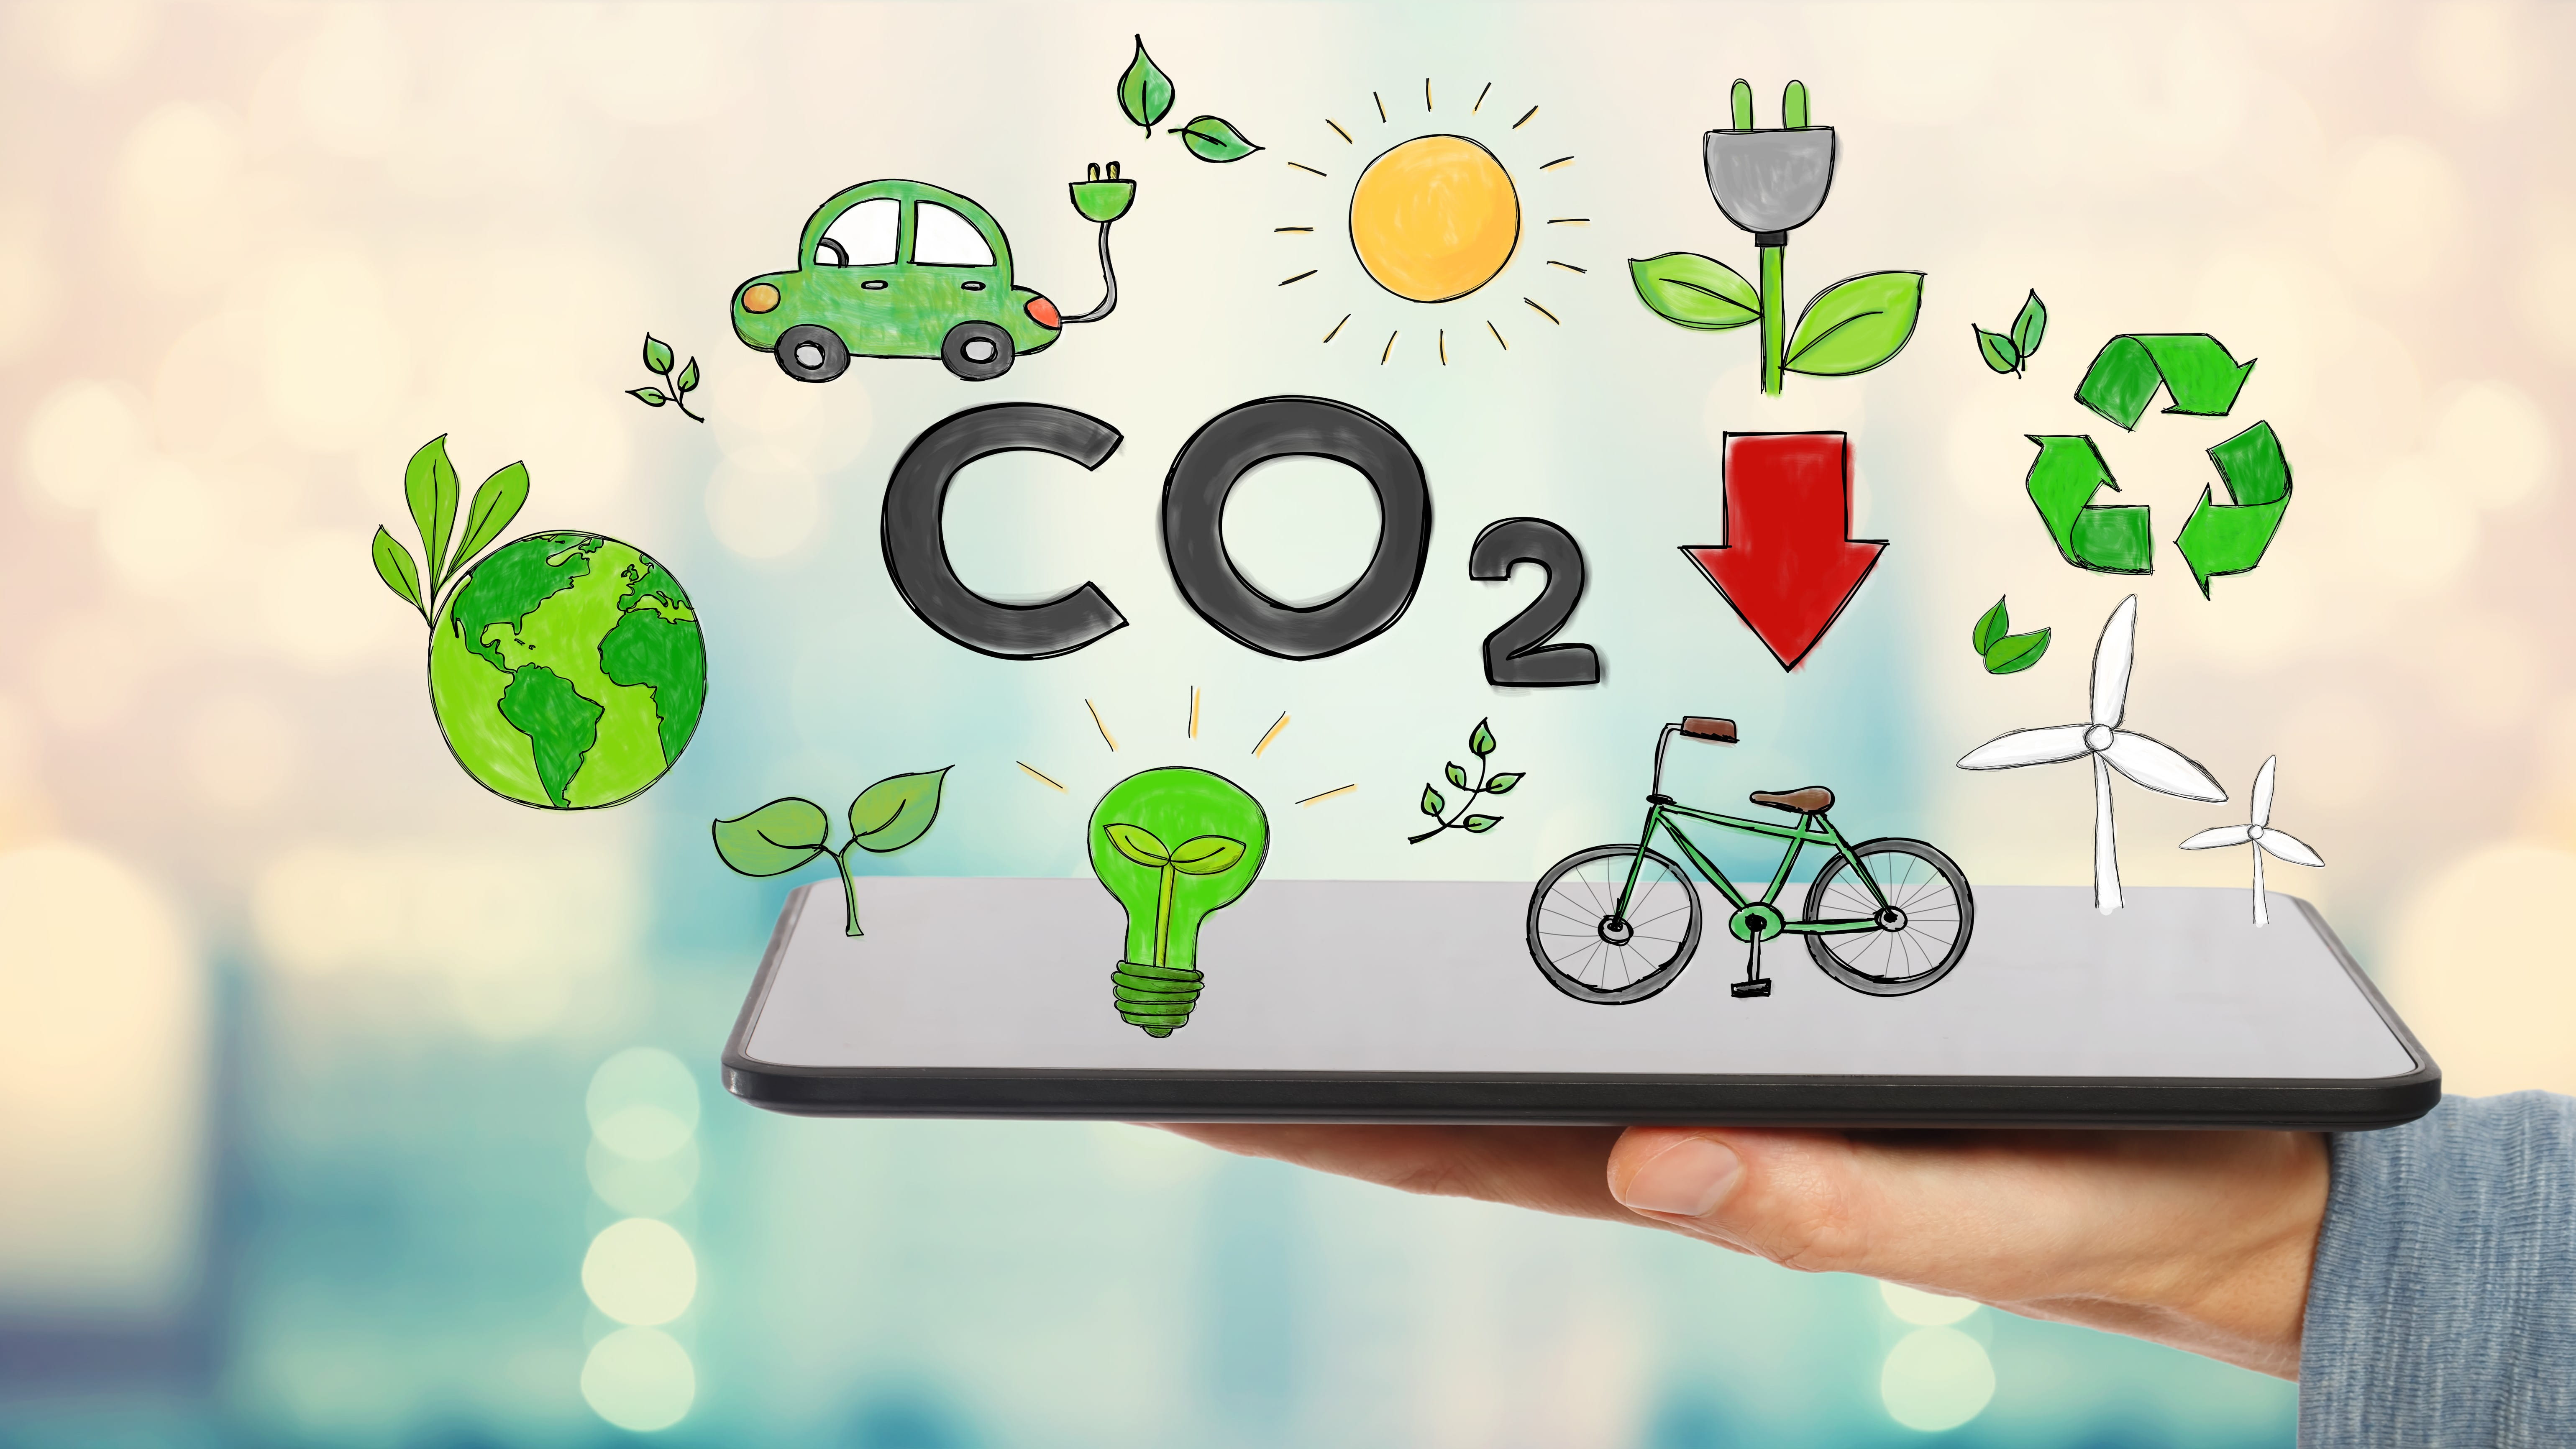 Mann hält einen Tablet-PC, darüber schweben verschiedenen Symbole für Einsparungsmöglichkeiten von CO2 wie Elektroauto, Windrad und weitere sowie die Buchstaben CO2 mit einem Pfeil nach unten.